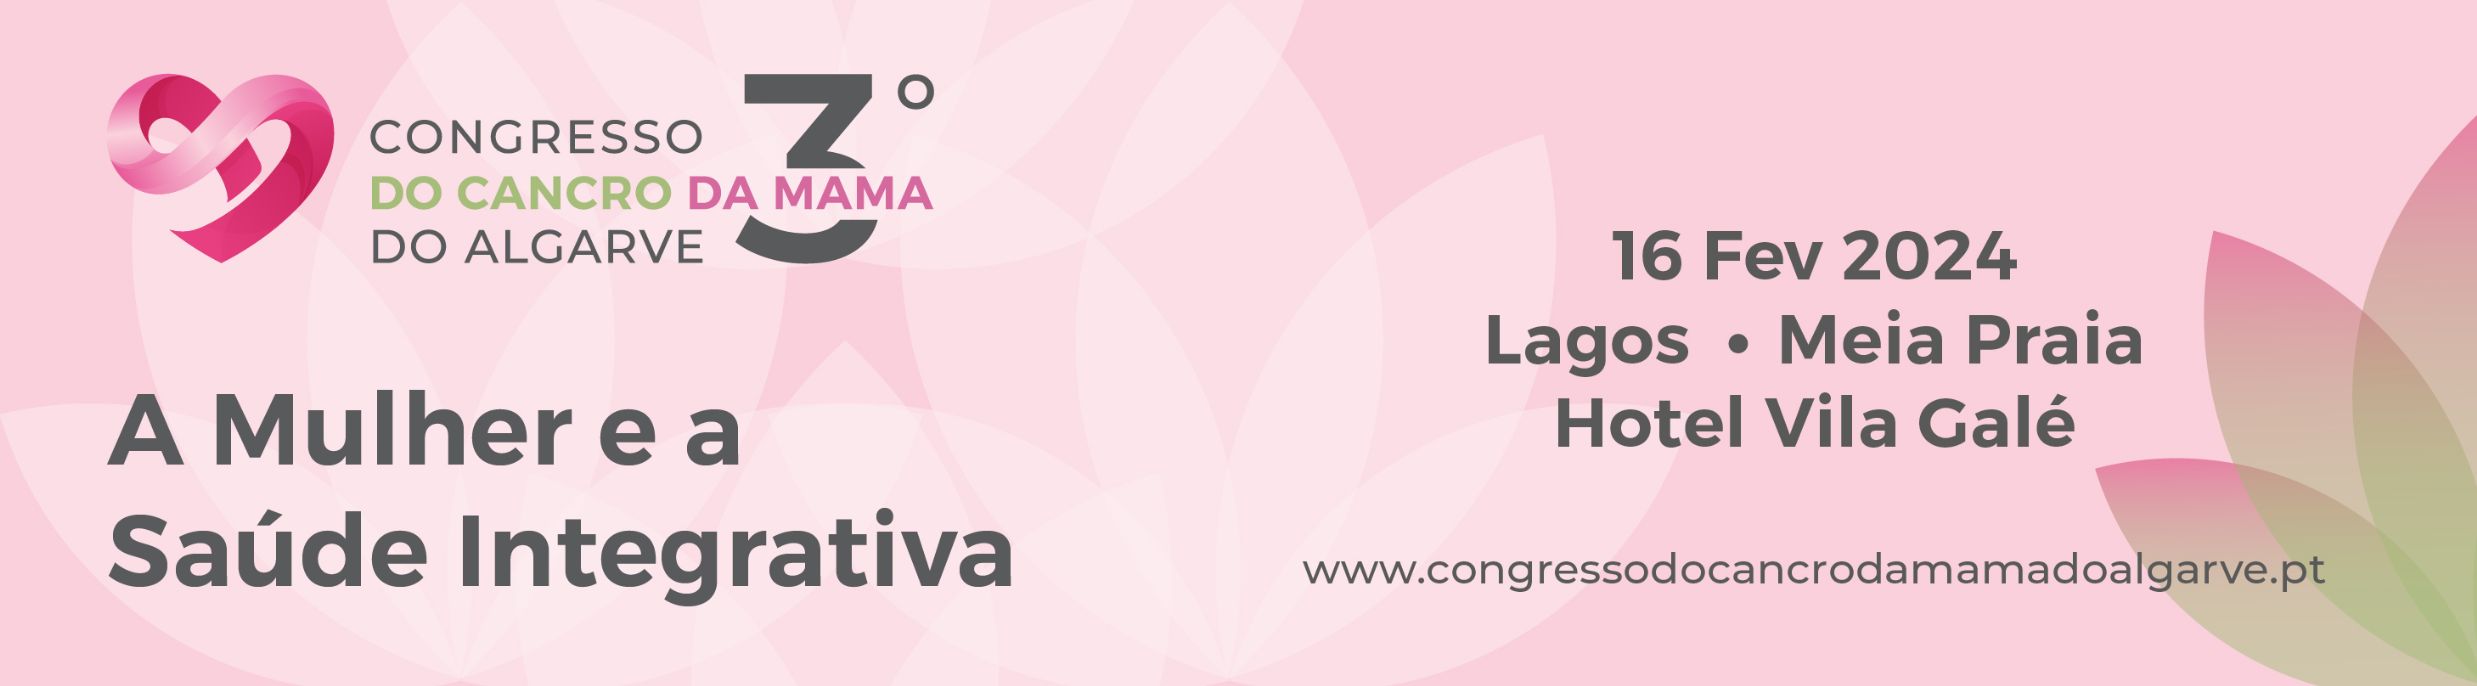 3º Congresso do Cancro da Mama do Algarve – a Mulher e a Saúde Integrativa